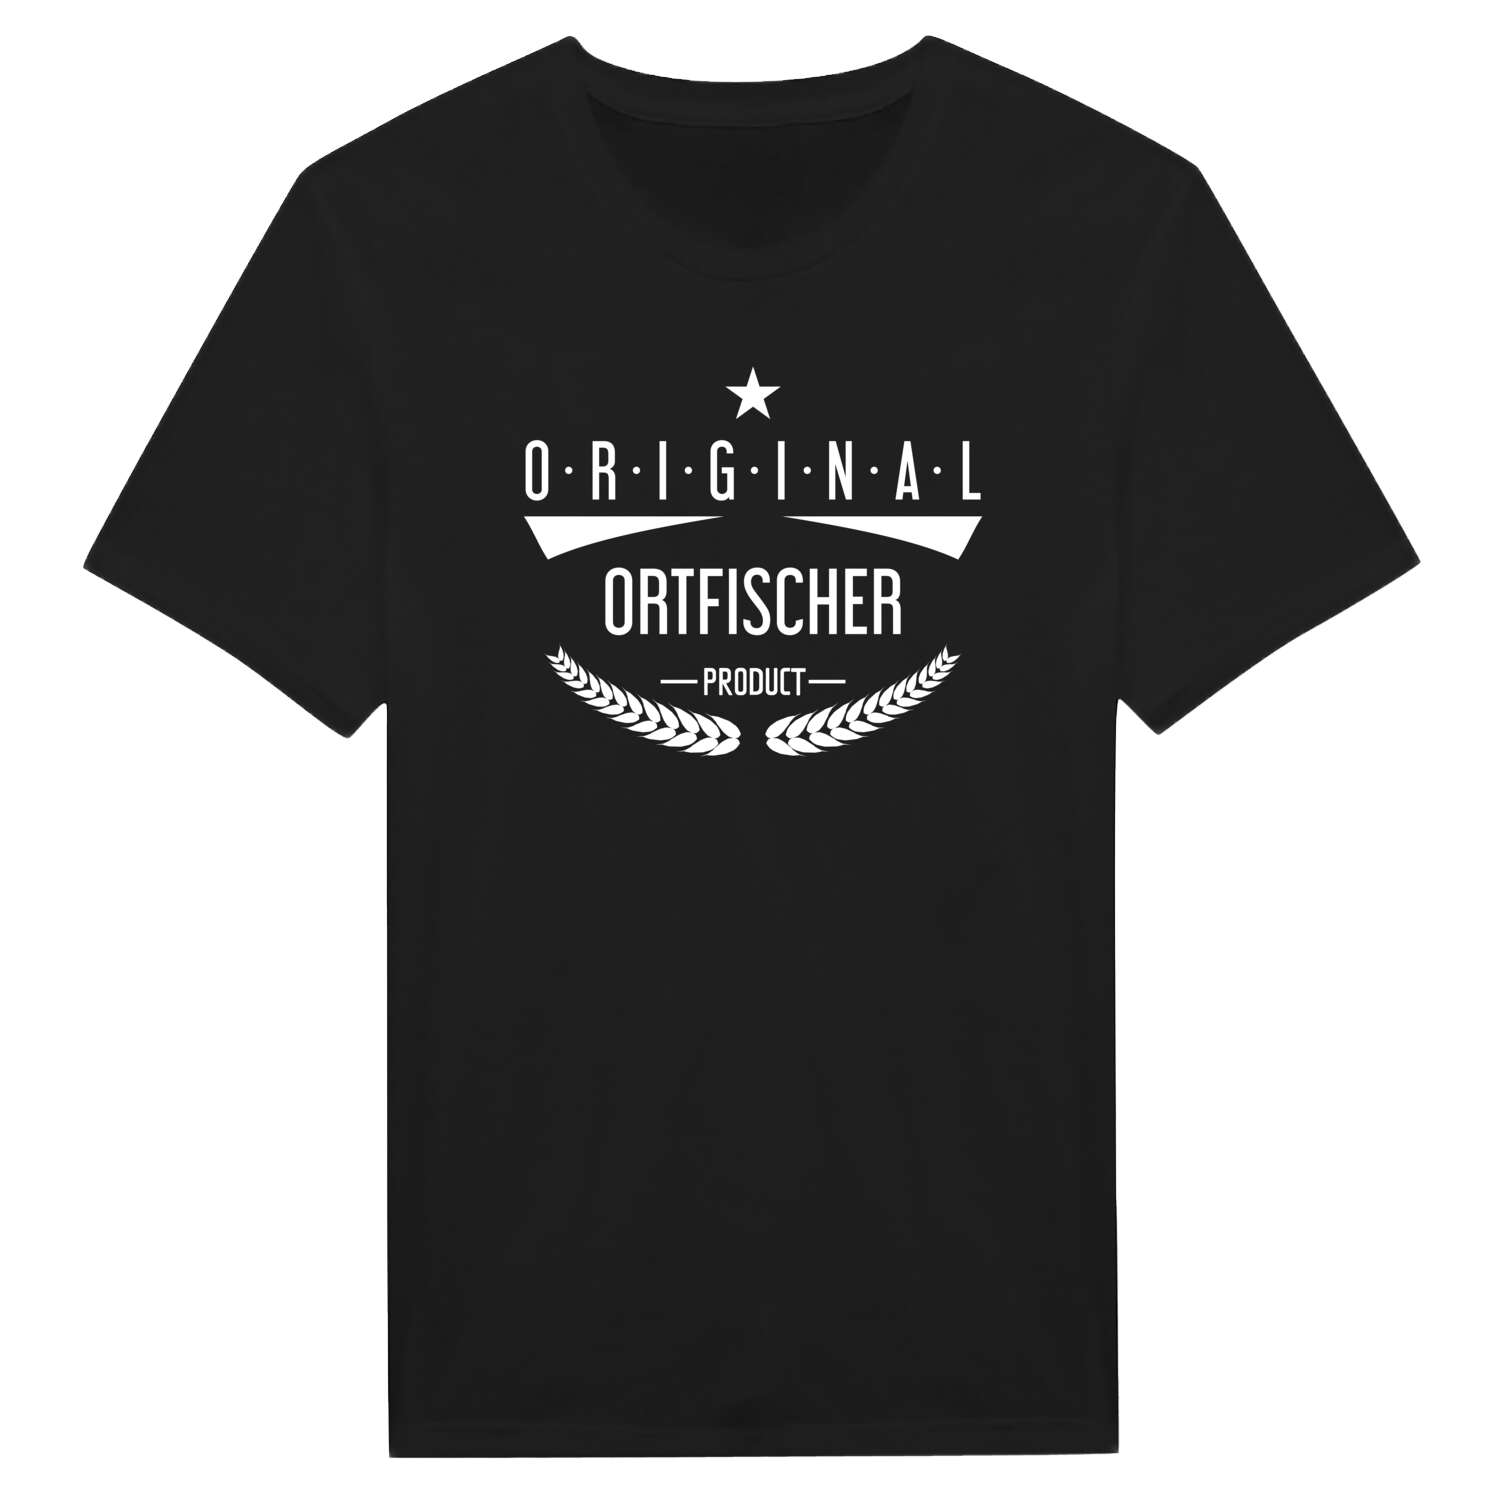 Ortfischer T-Shirt »Original Product«